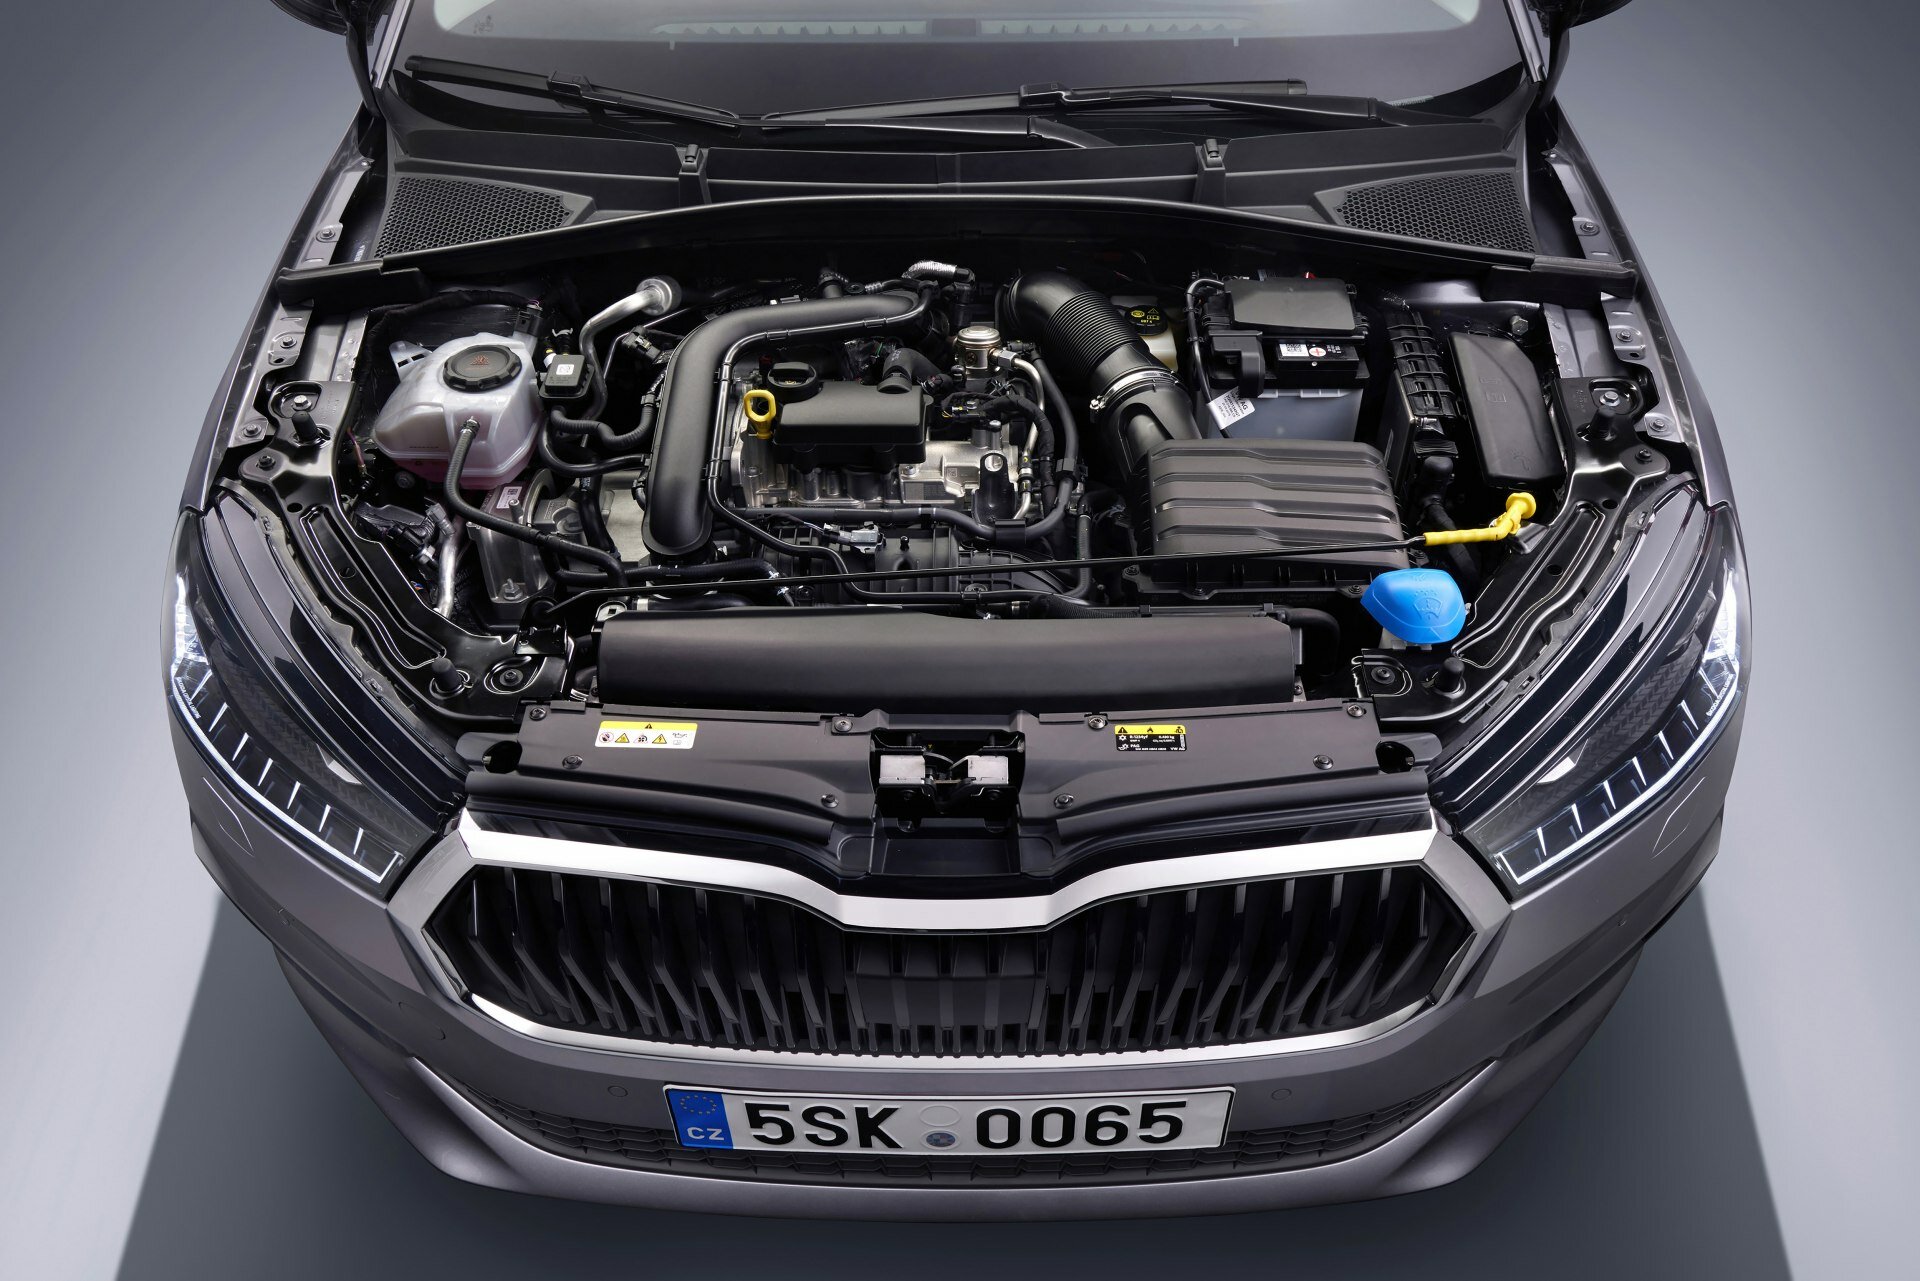 Škoda Fabia - naftový motor ani hybrid nenajdete, pohon zajišťují agregáty MPI a TSI